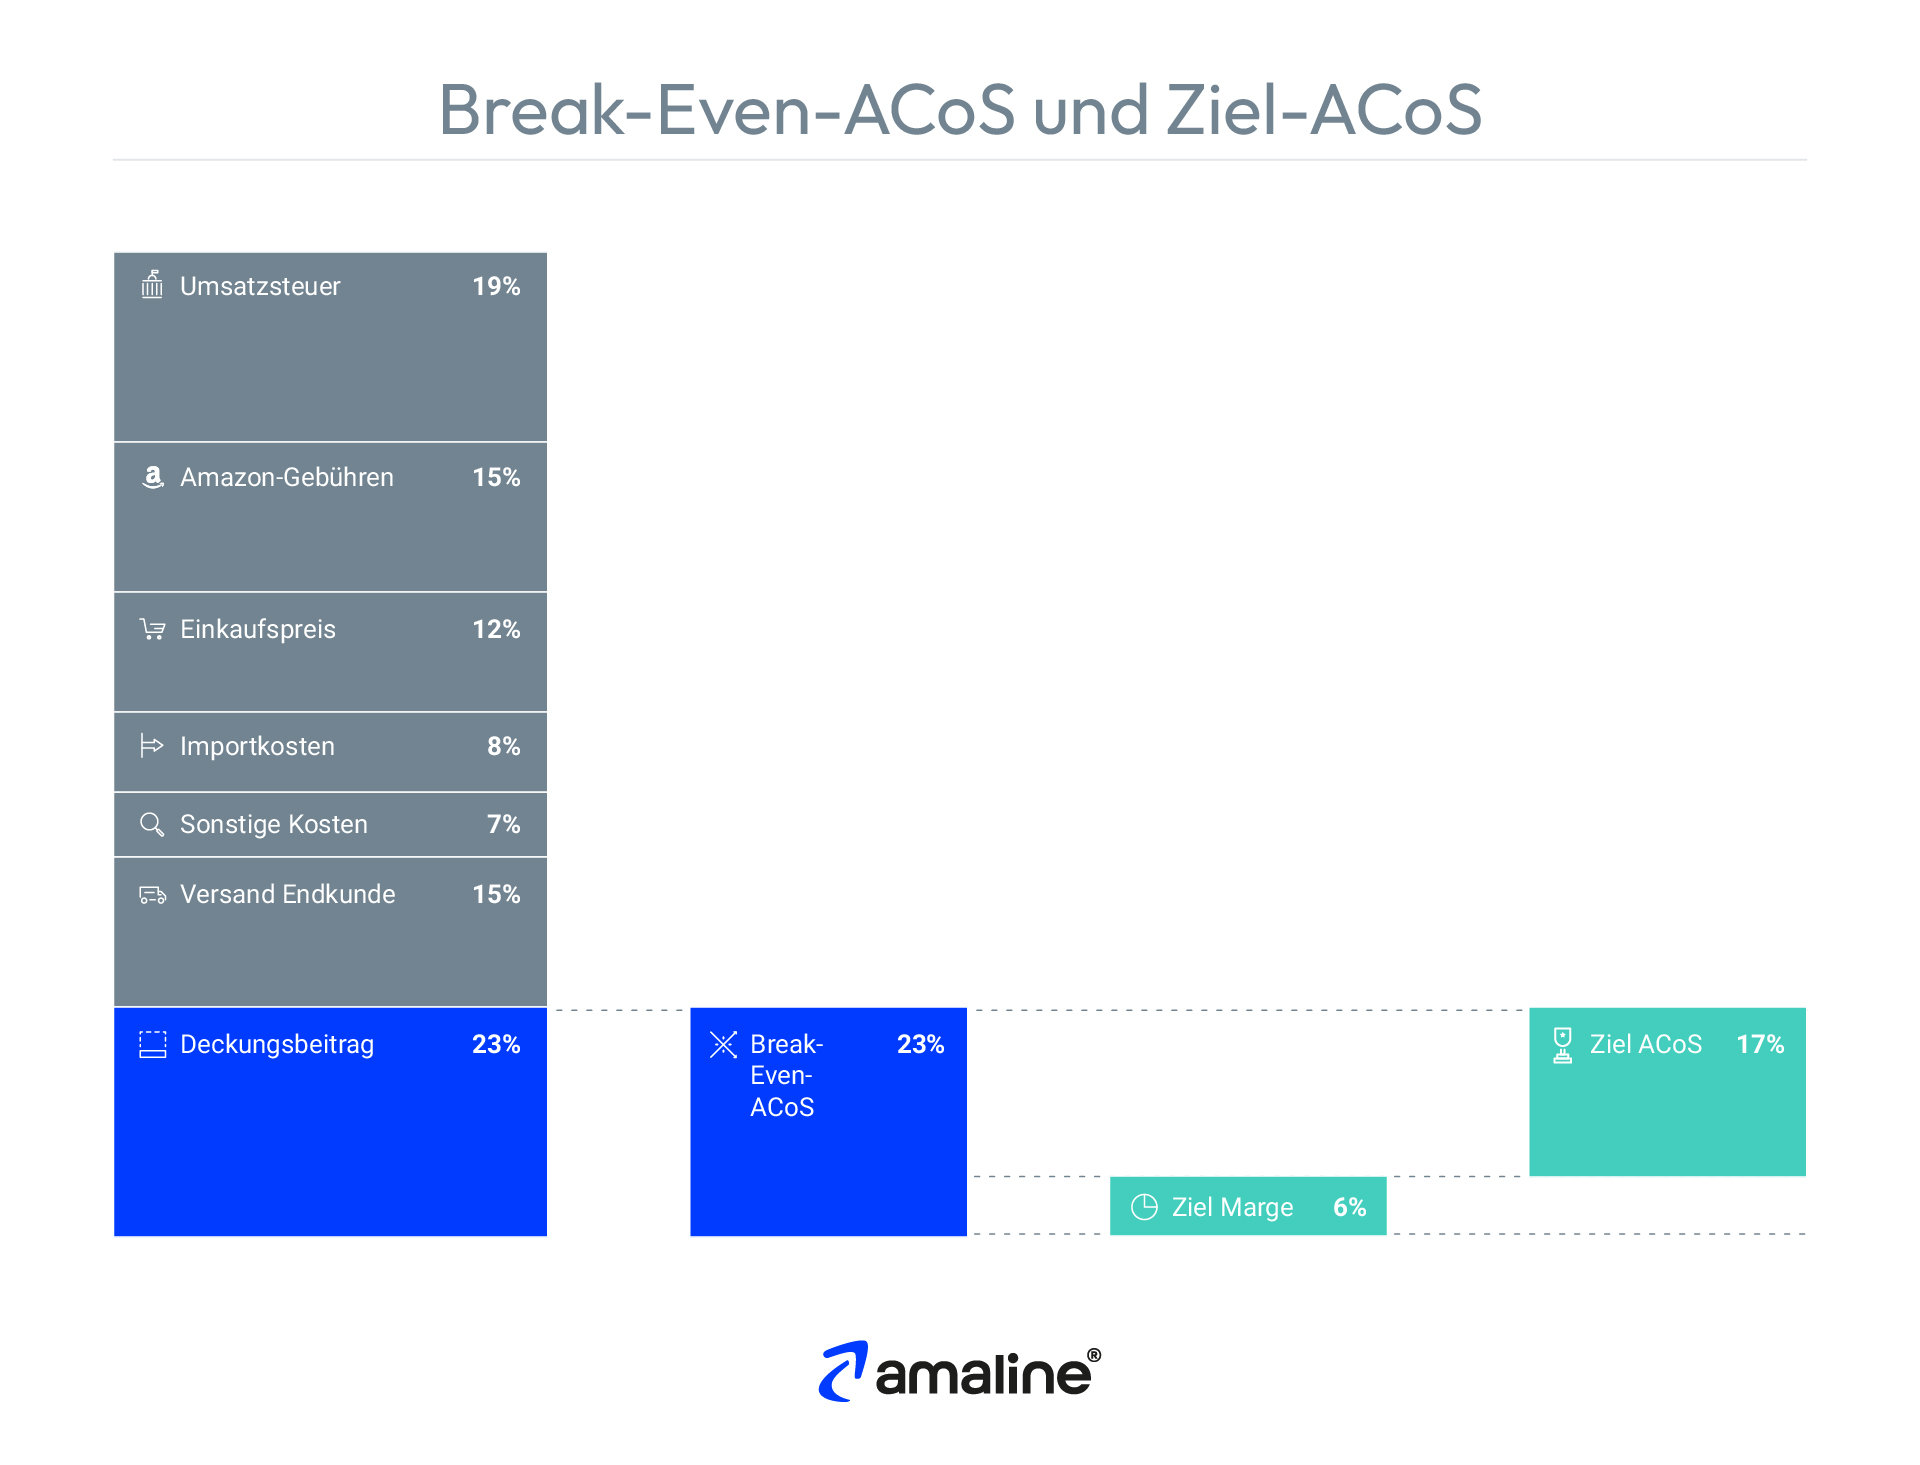 Die Grafik erklärt, was der Break-Even-ACoS auf Amazon funktioniert und zeigt eine Möglichkeit den Ziel-ACoS zu bestimmen.